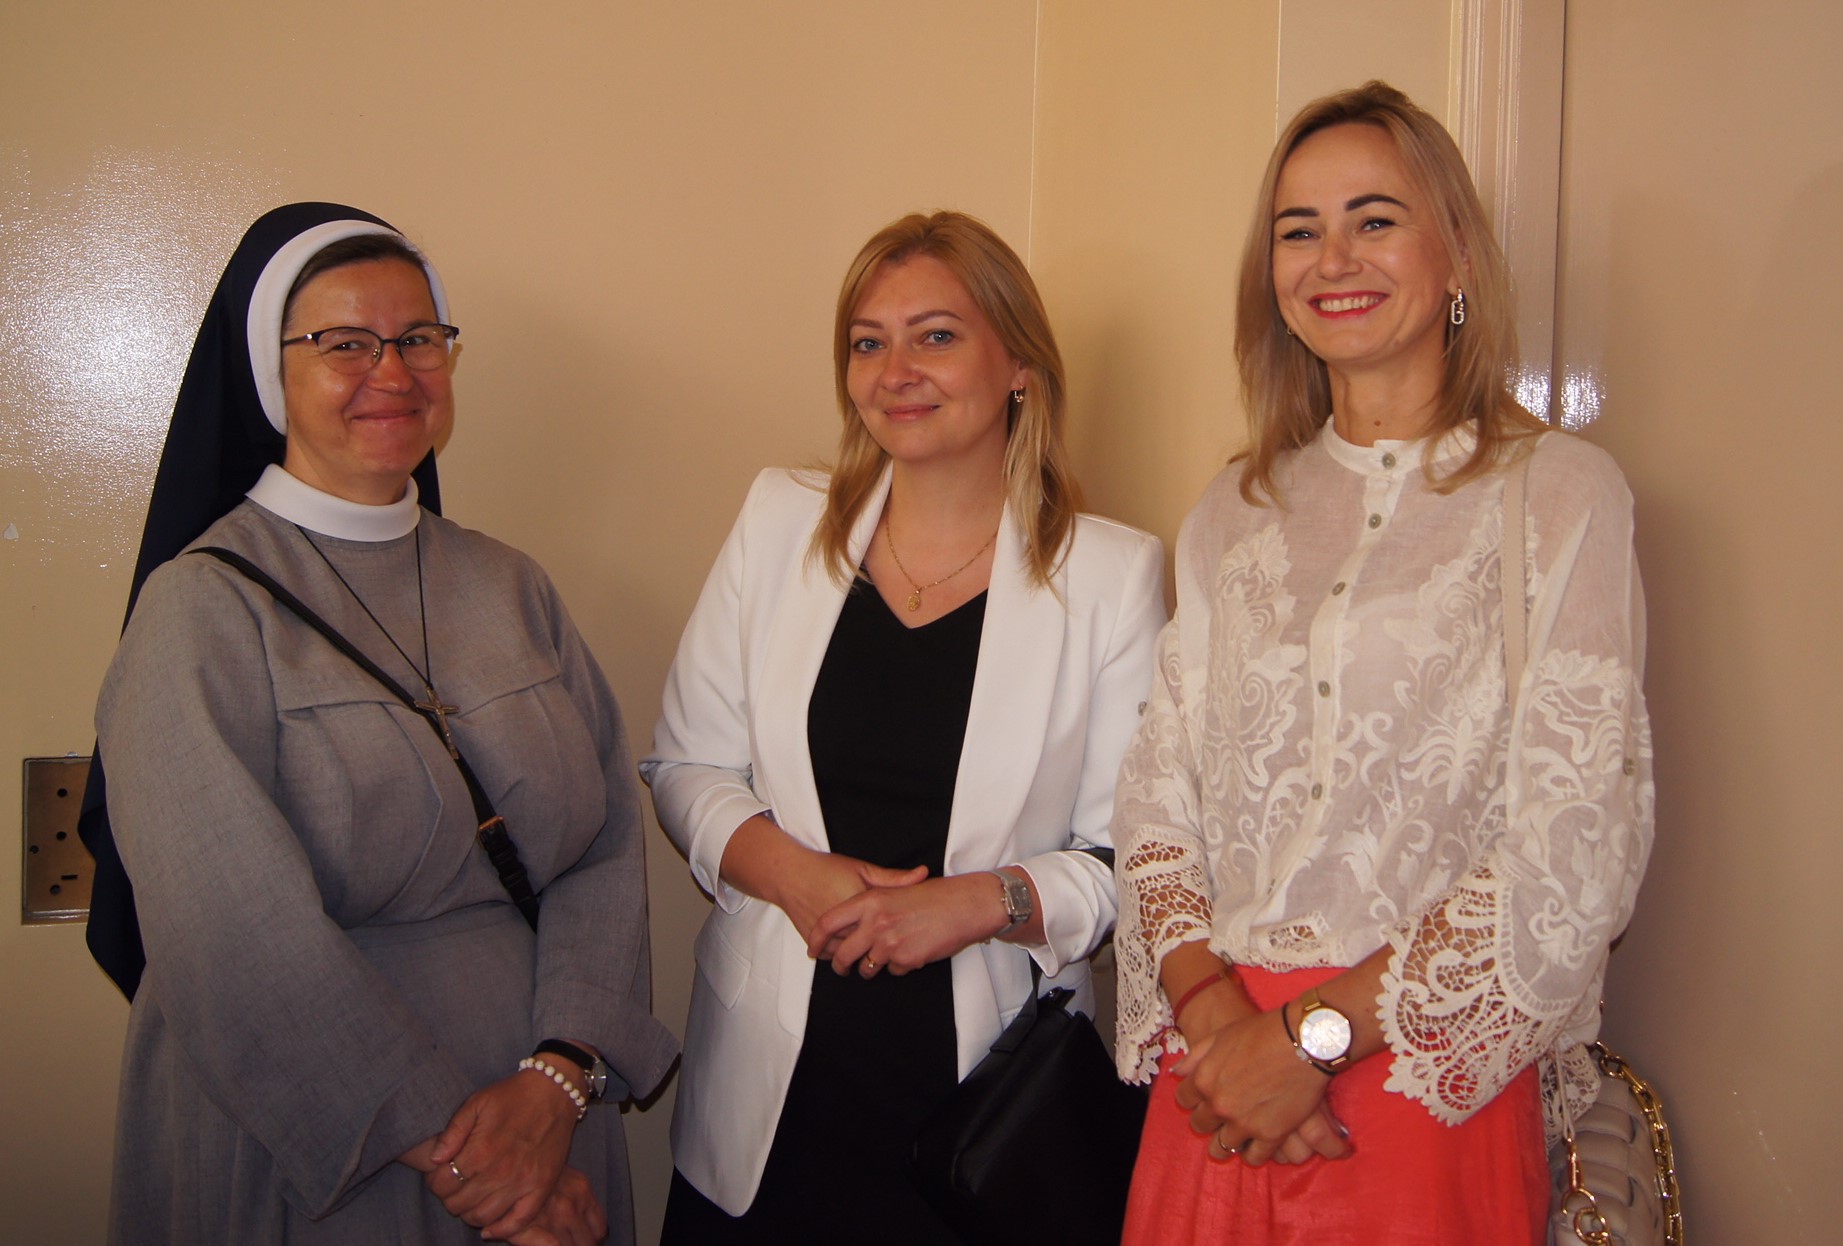 Nauczyciele szkoły podstawowej: Siostra Janina, Katarzyna Muszalik i Justyna Stokłosa. Fot. Fryderyk Kamczyk